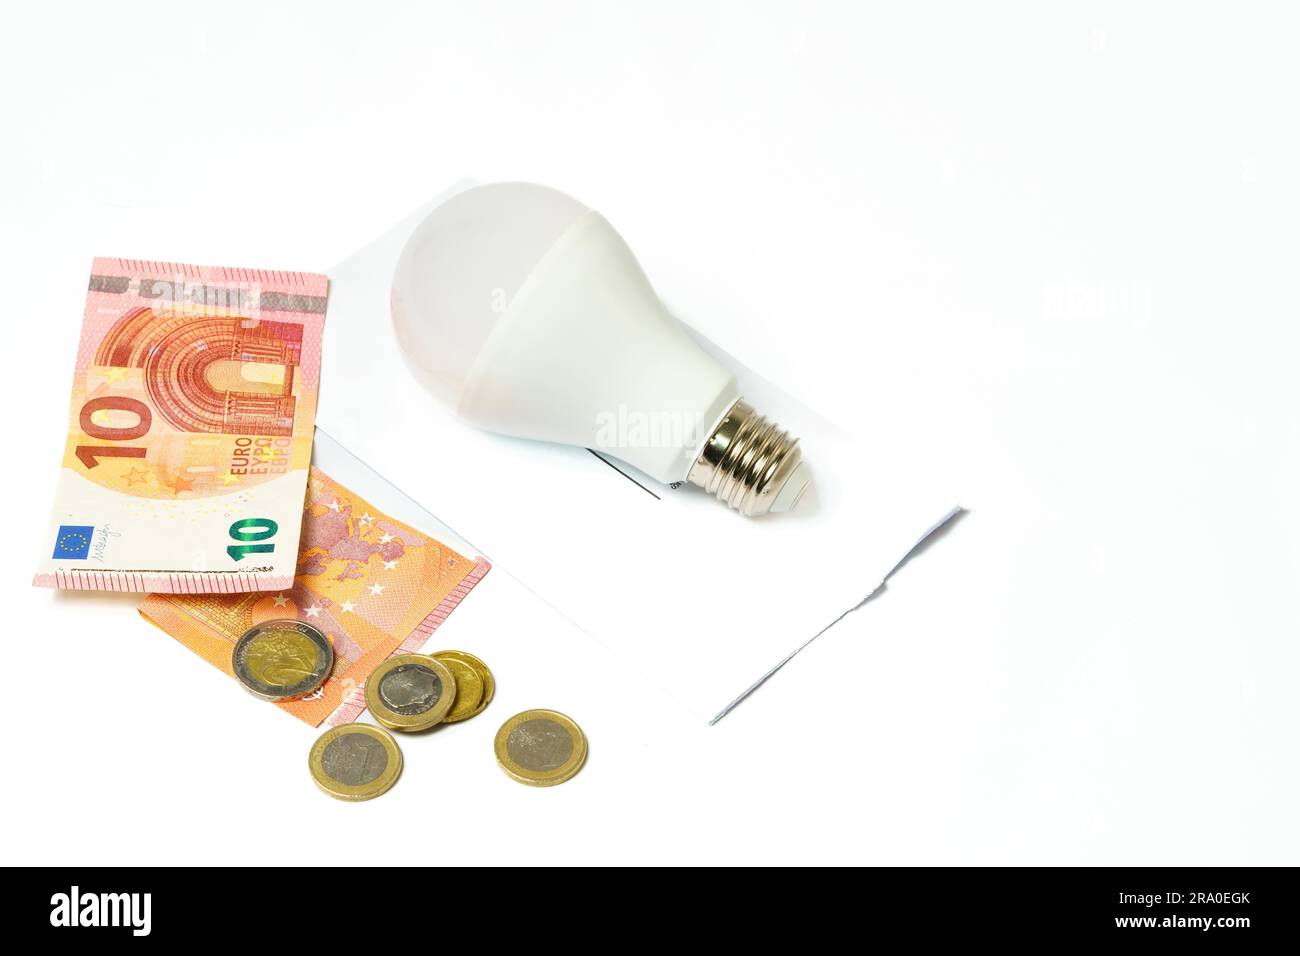 Ampoule sur une facture d'électricité et billets et pièces sur fond blanc. Notion d'augmentation du prix de l'électricité Banque D'Images